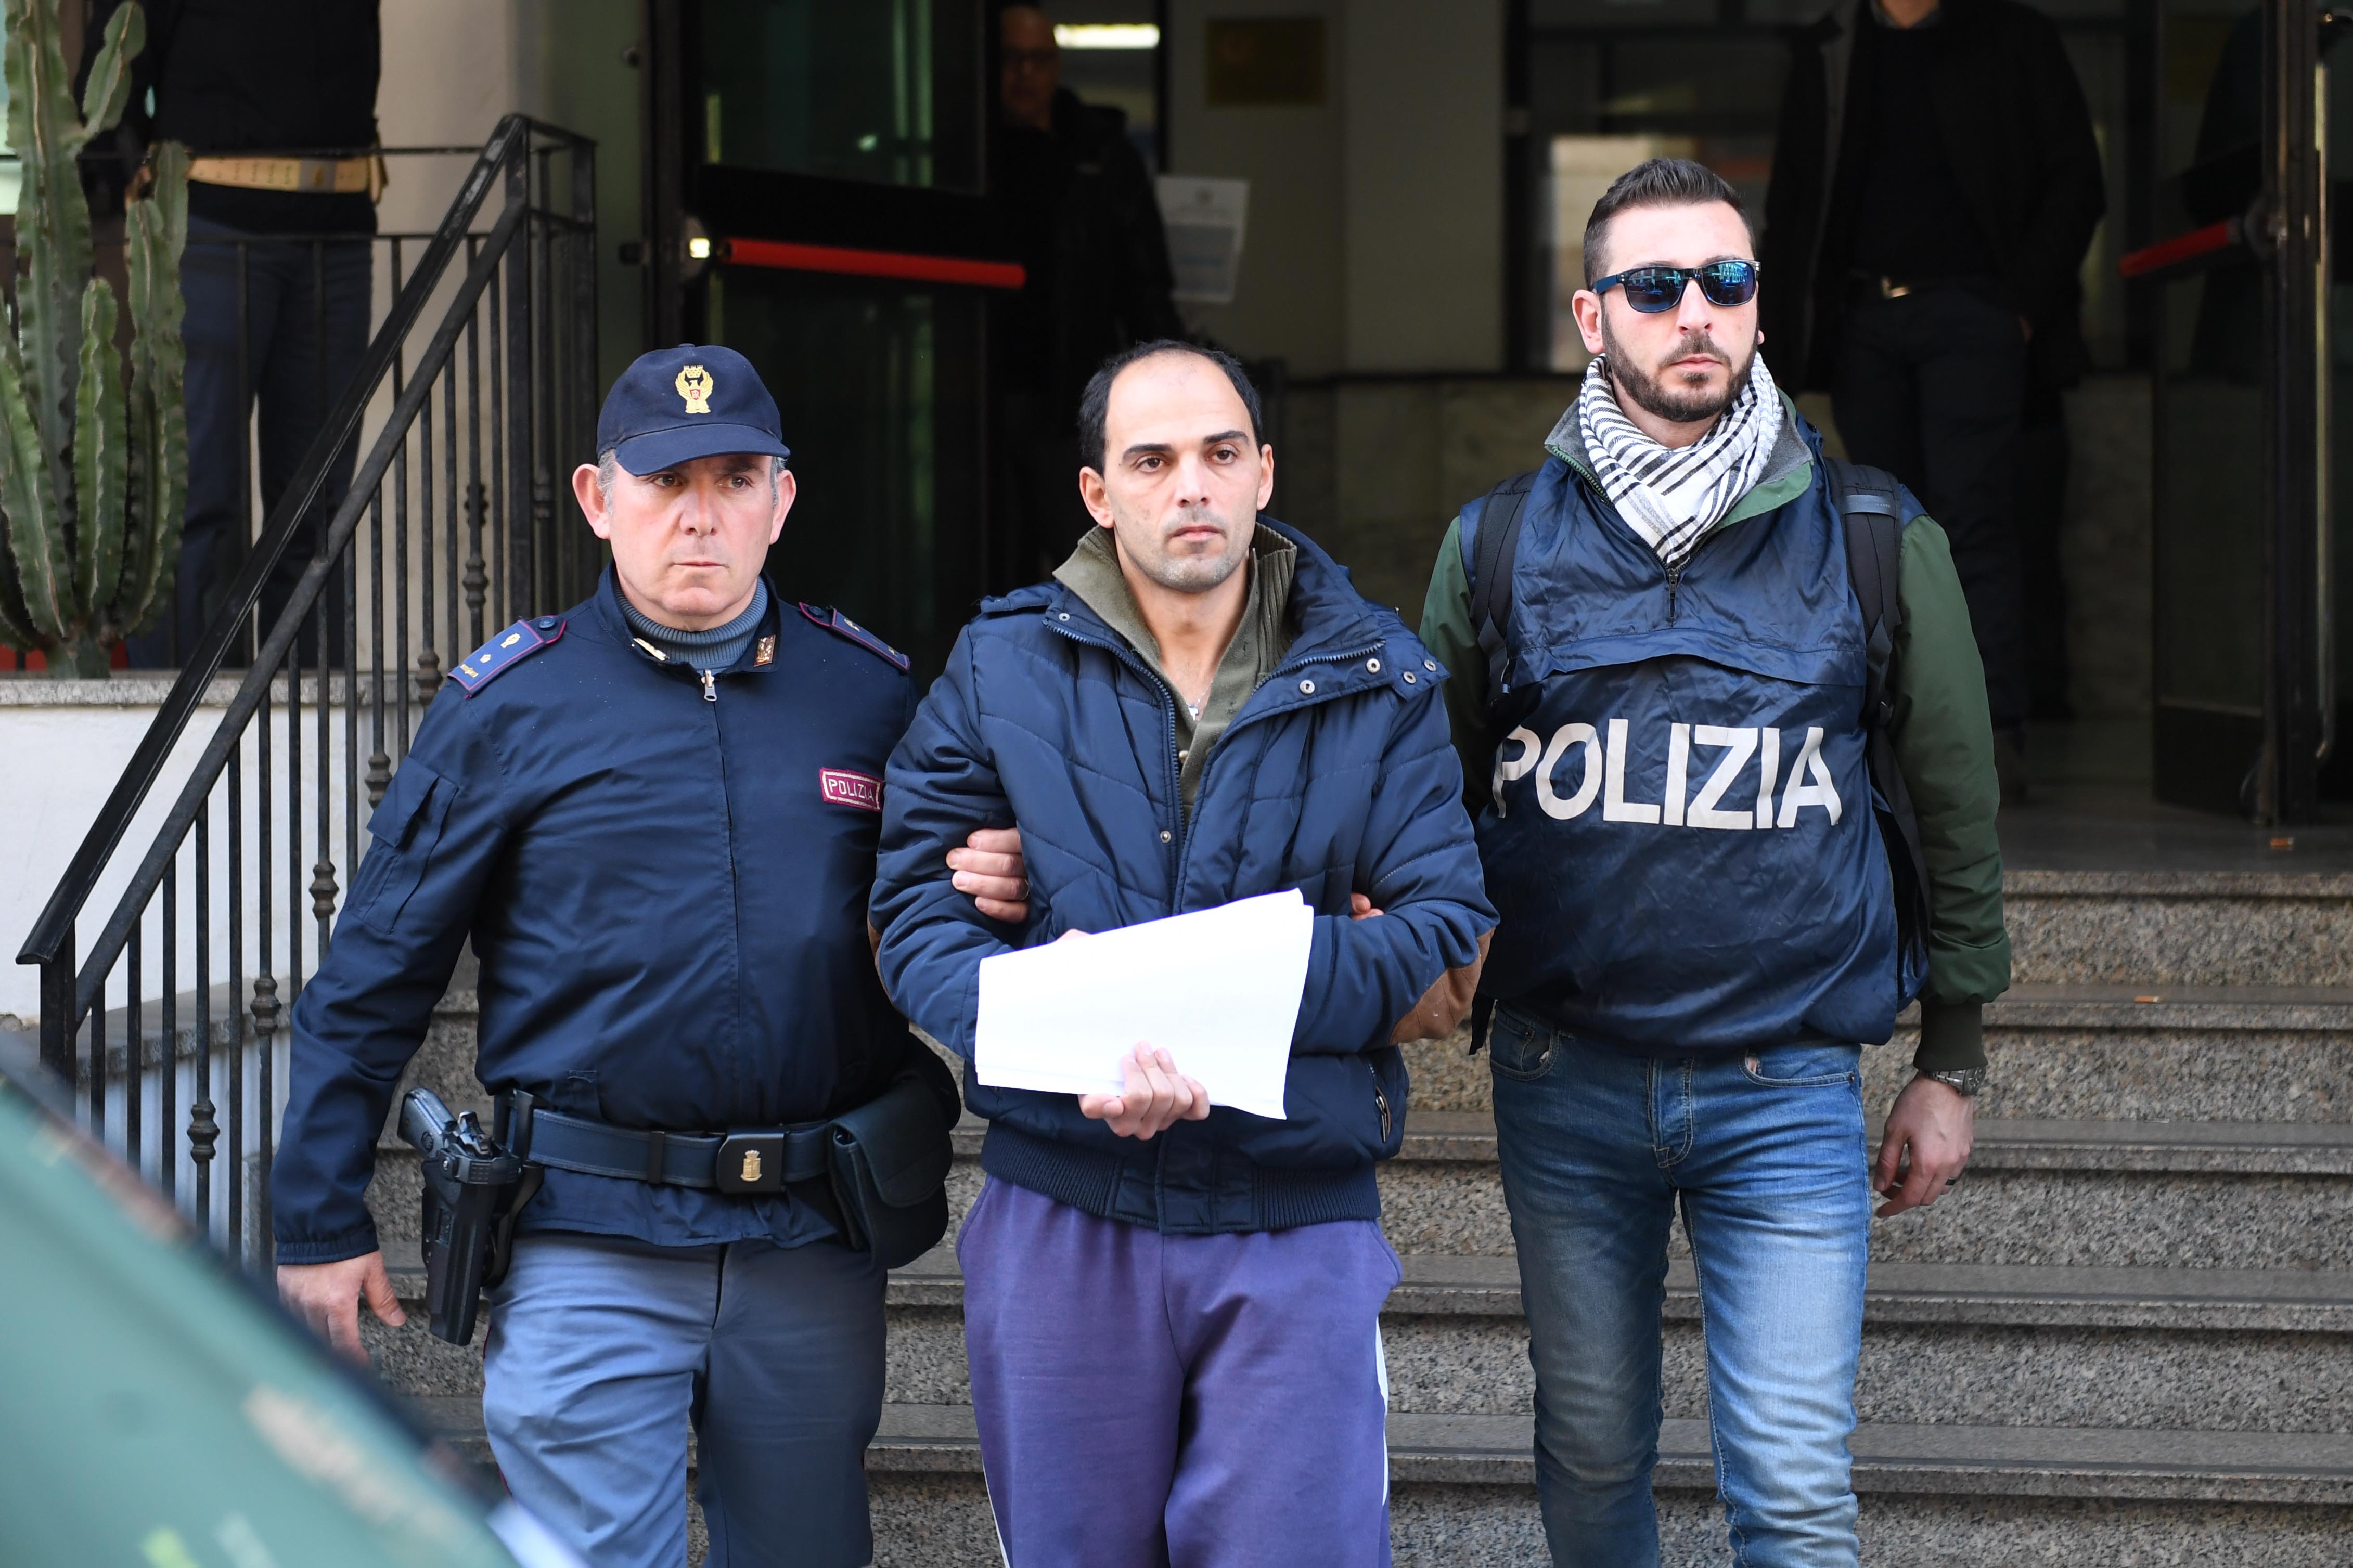 Sequestro di persona e tentata estorsione a Reggio Calabria, le foto ...